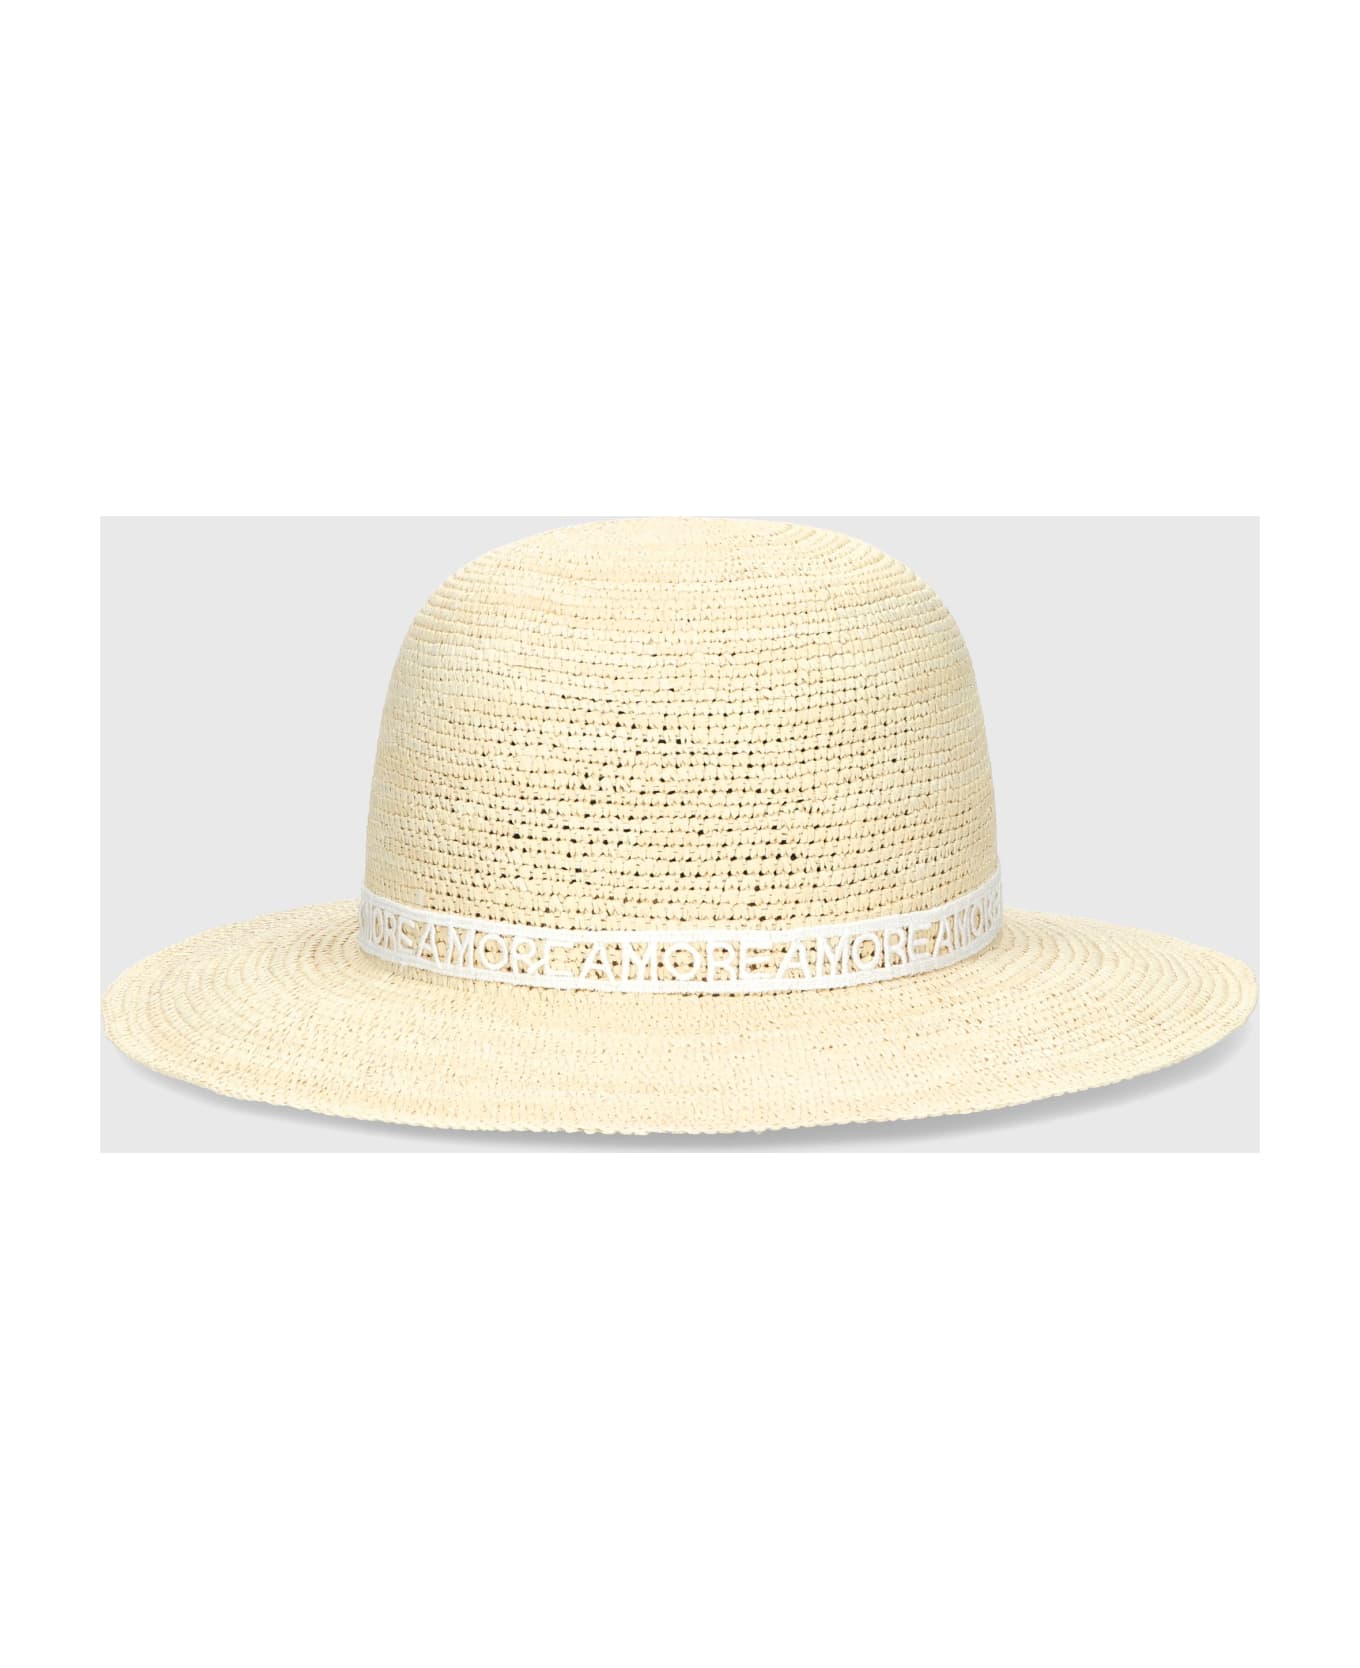 Borsalino Violet Panama Crochet - NATURAL, PATTERNED WHITE HAT BAND 帽子